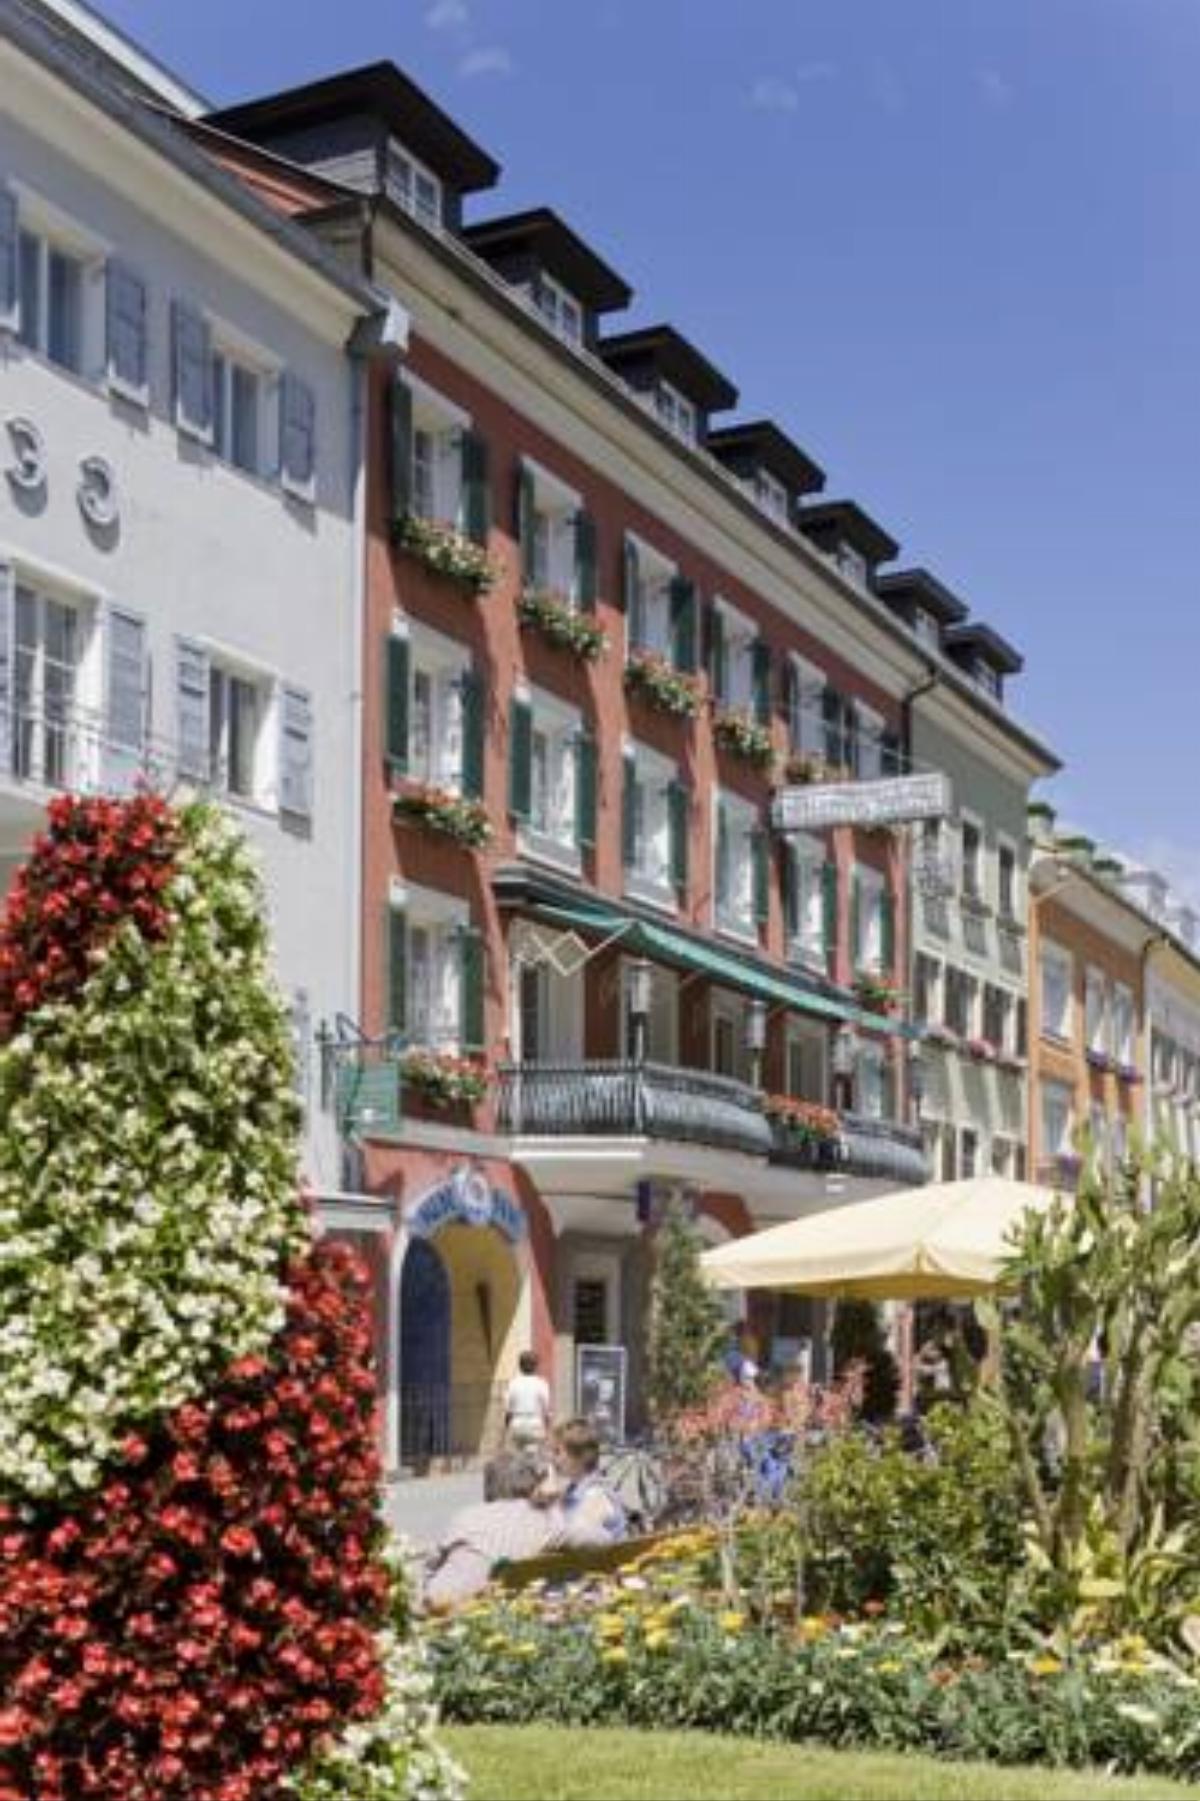 Vergeiner's Hotel Traube Hotel Lienz Austria